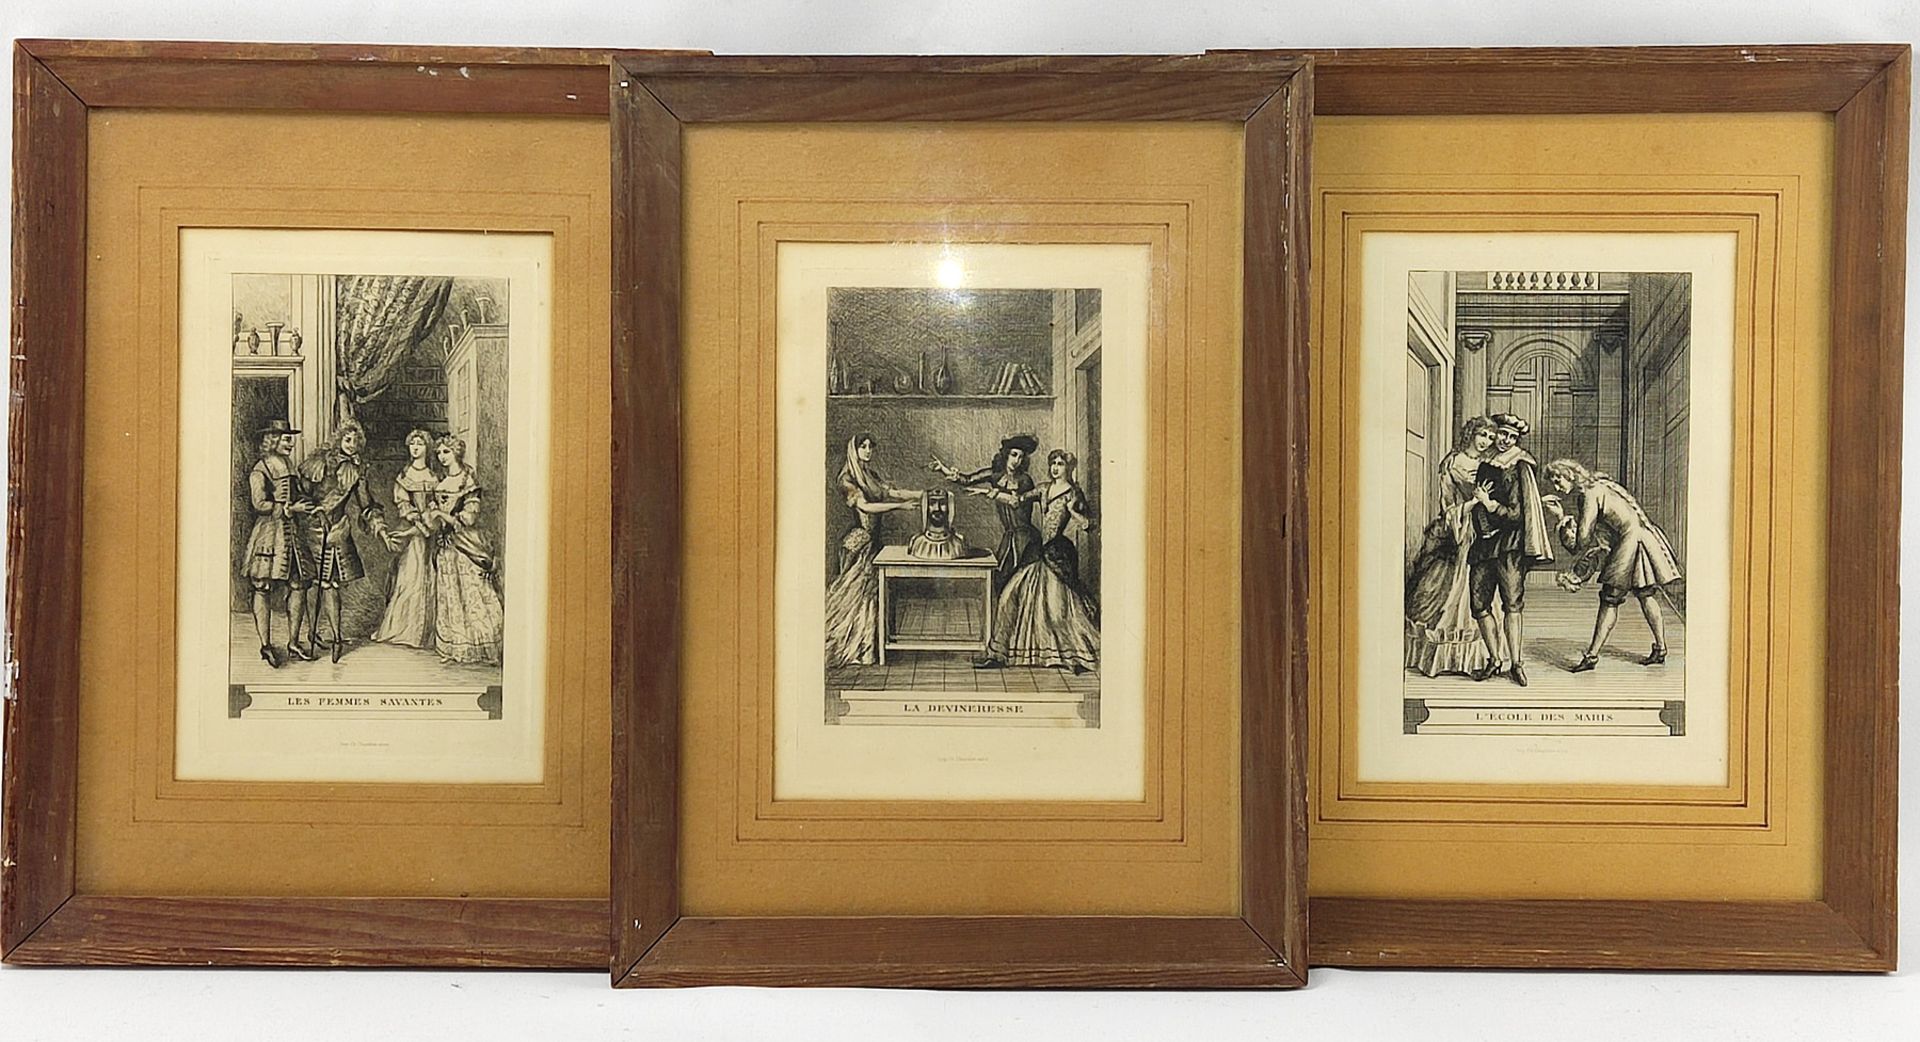 3 Druckgrafiken von Ch. Chardon aine, Frankreich, später Gebr. Wittmann, 19. Jh.